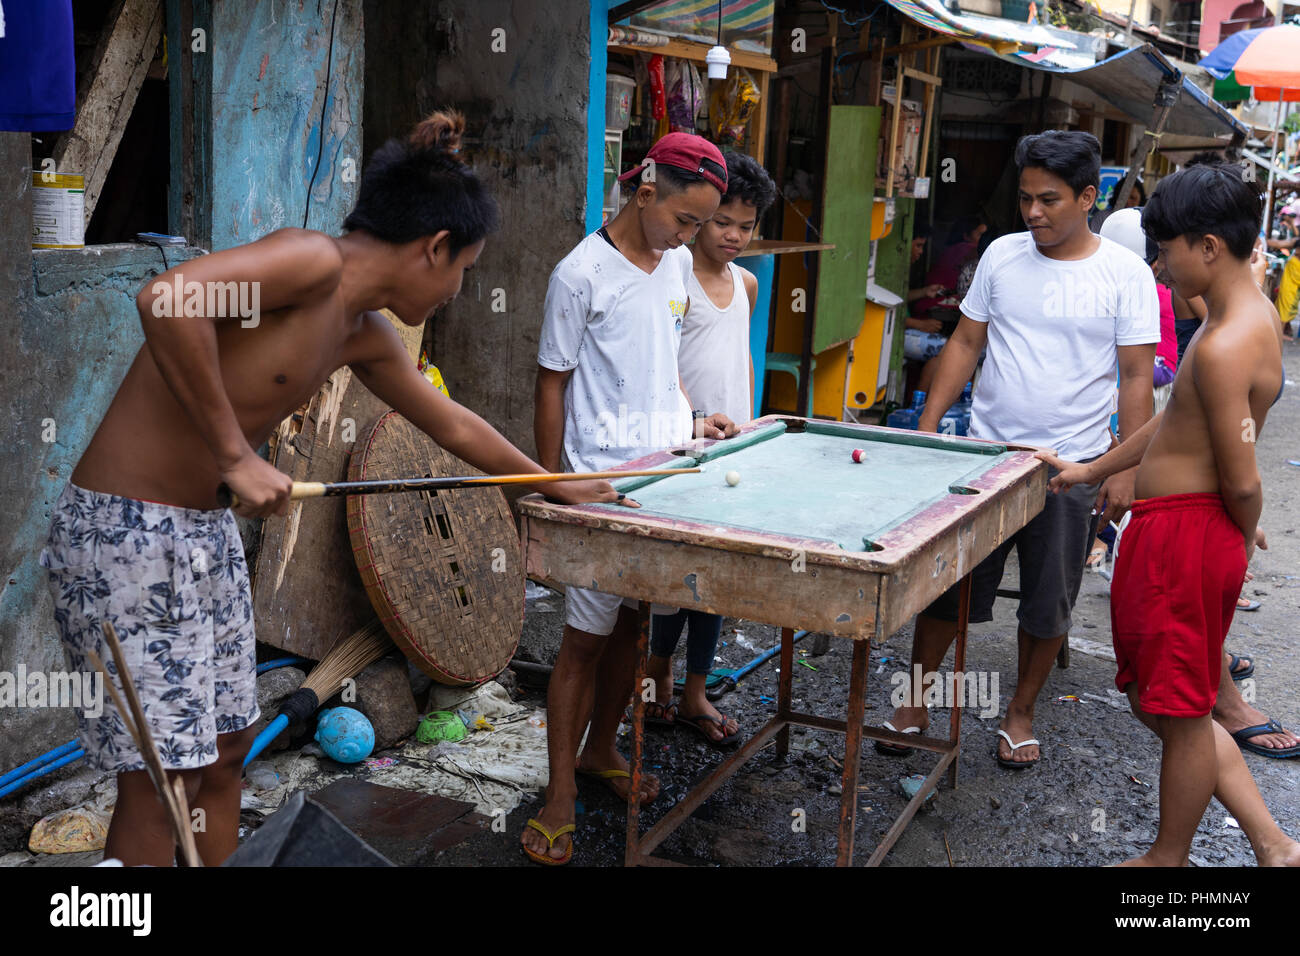 Un gruppo di giovani ragazzi filippini giocare una partita a biliardo su un tavolo improvvisato. Foto Stock